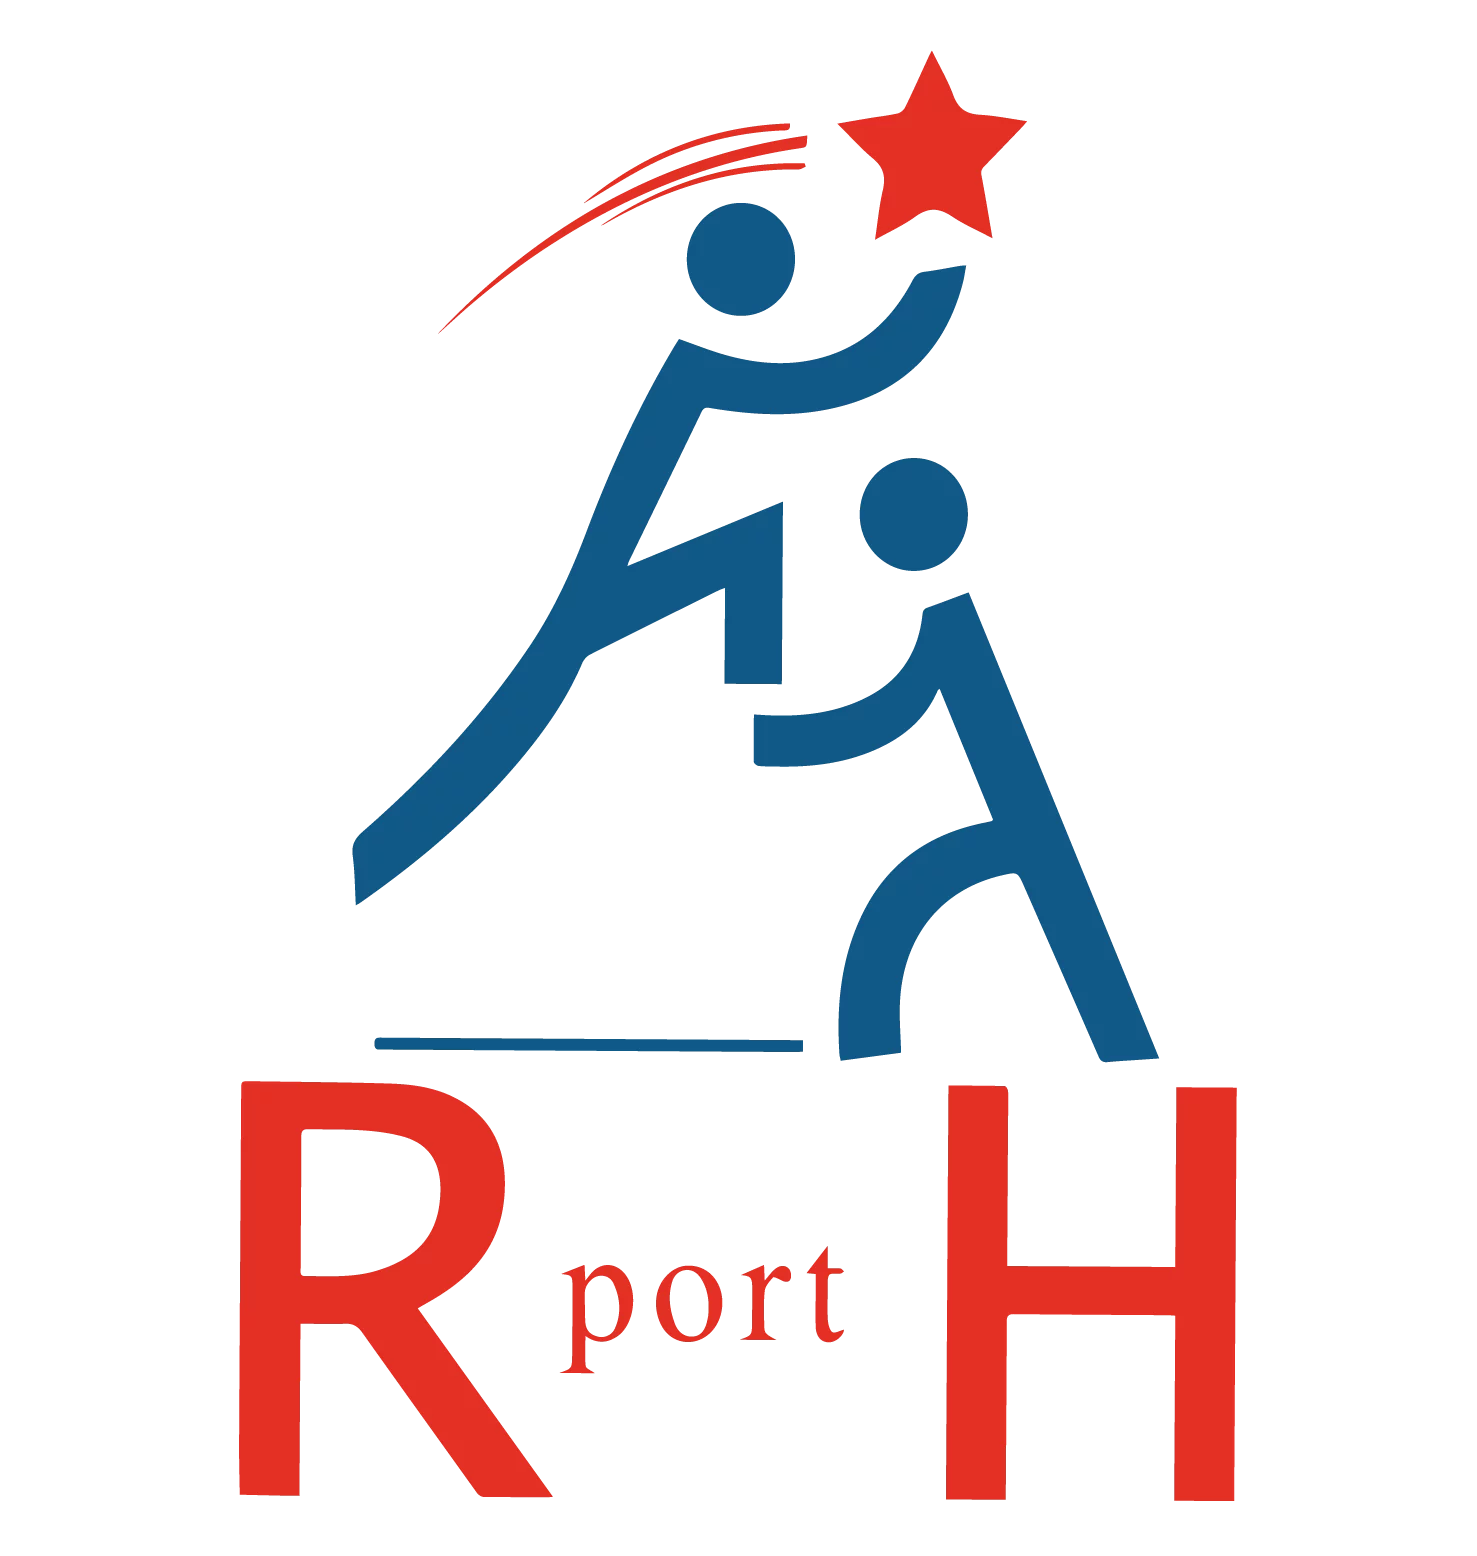 RPORTH recrute une assistante recrutement, Dakar, Sénégal